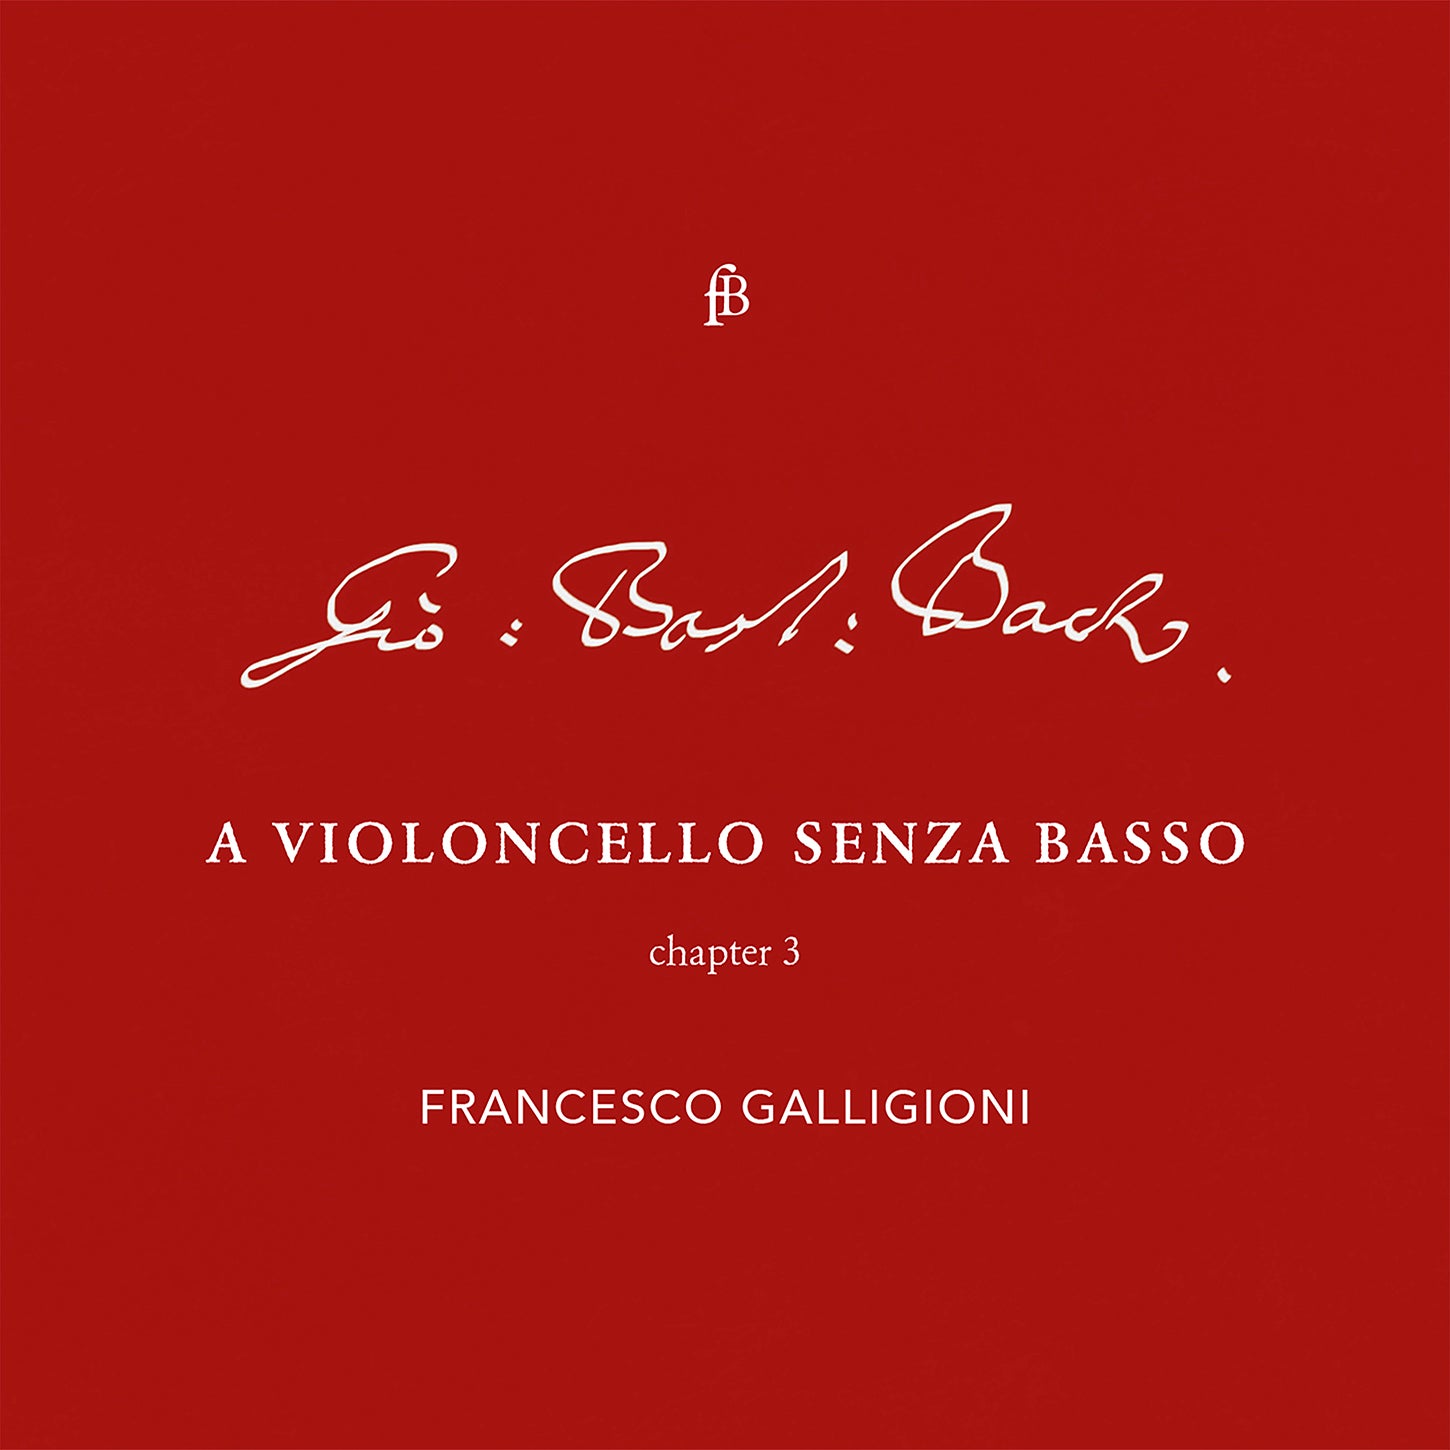 Bach: Violoncello, Chapter 3 / Galligioni